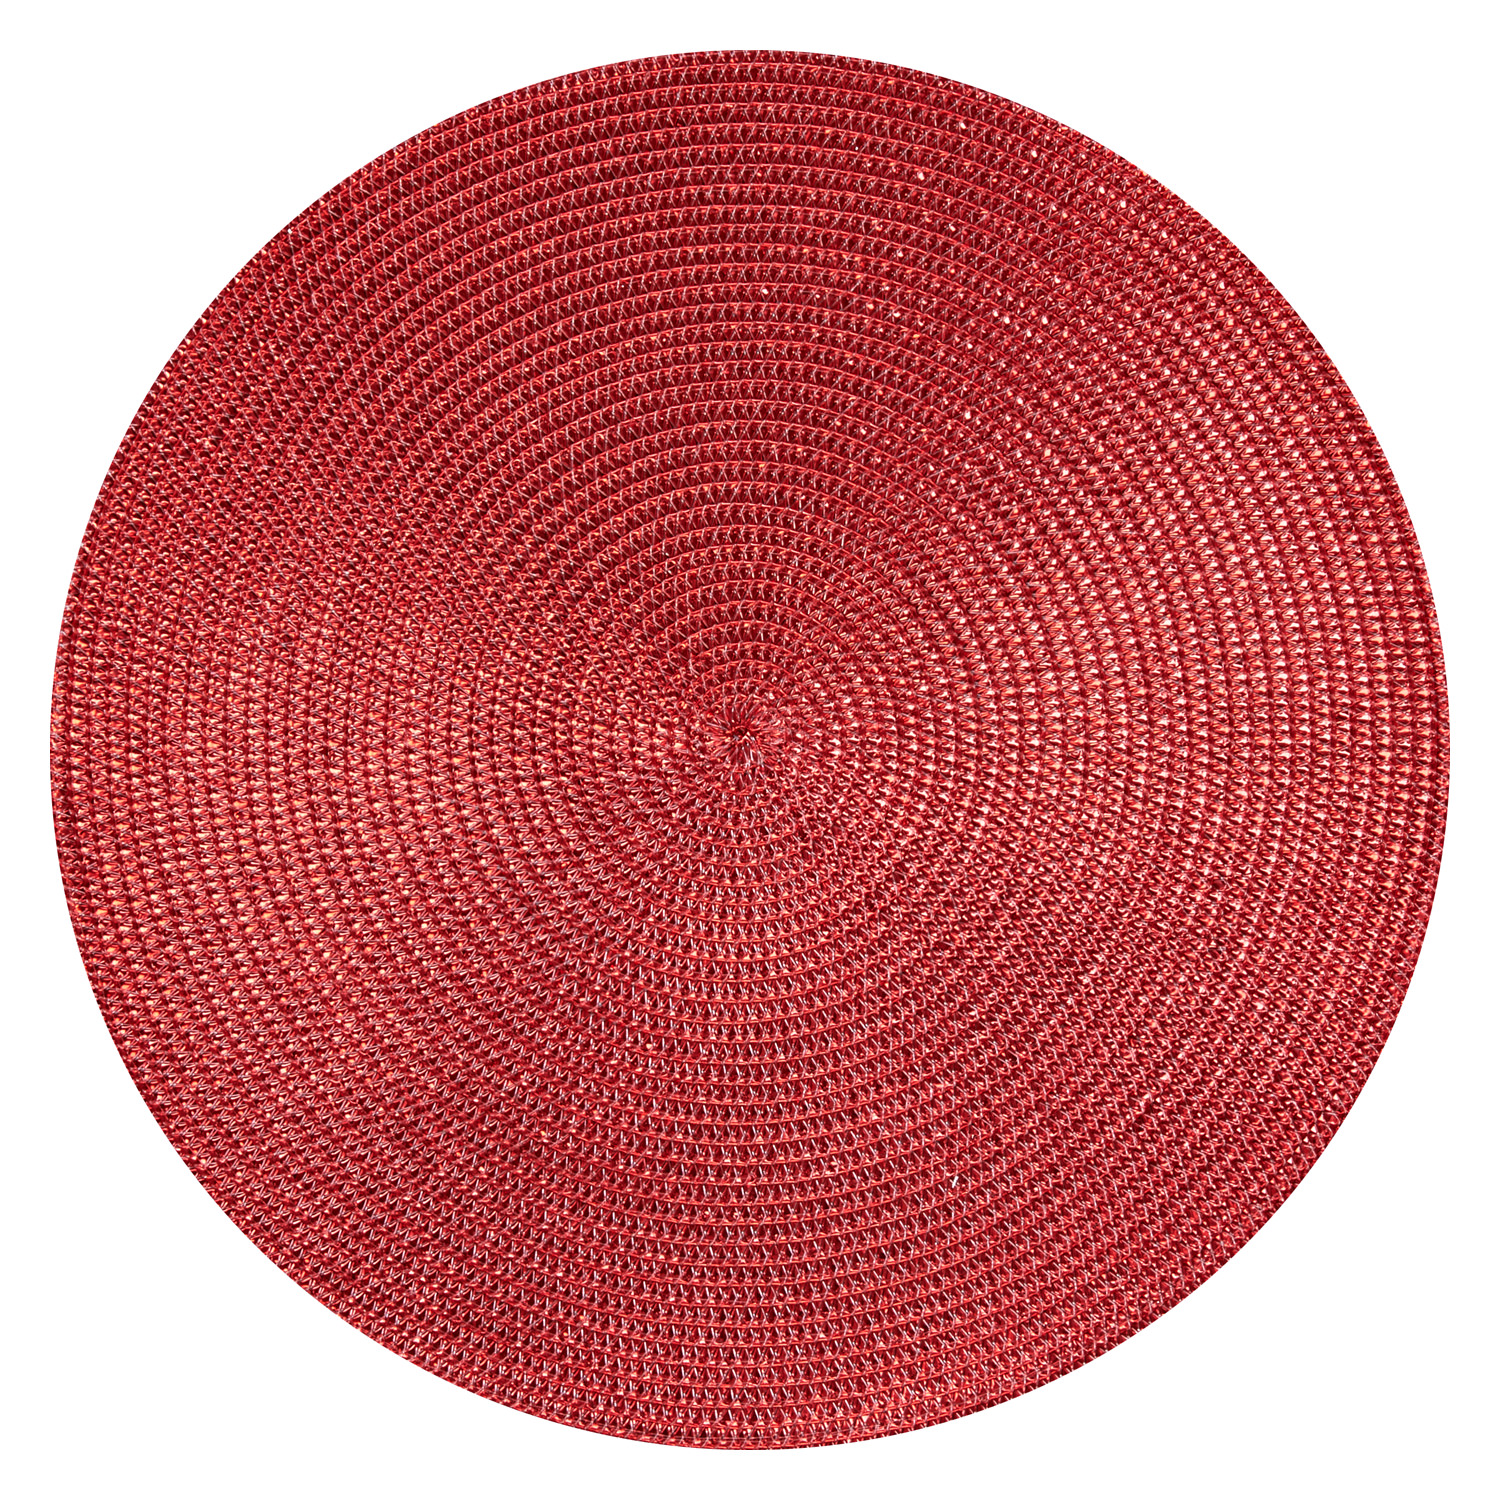 Tischset Polypro rund - Farbe rot glänzend